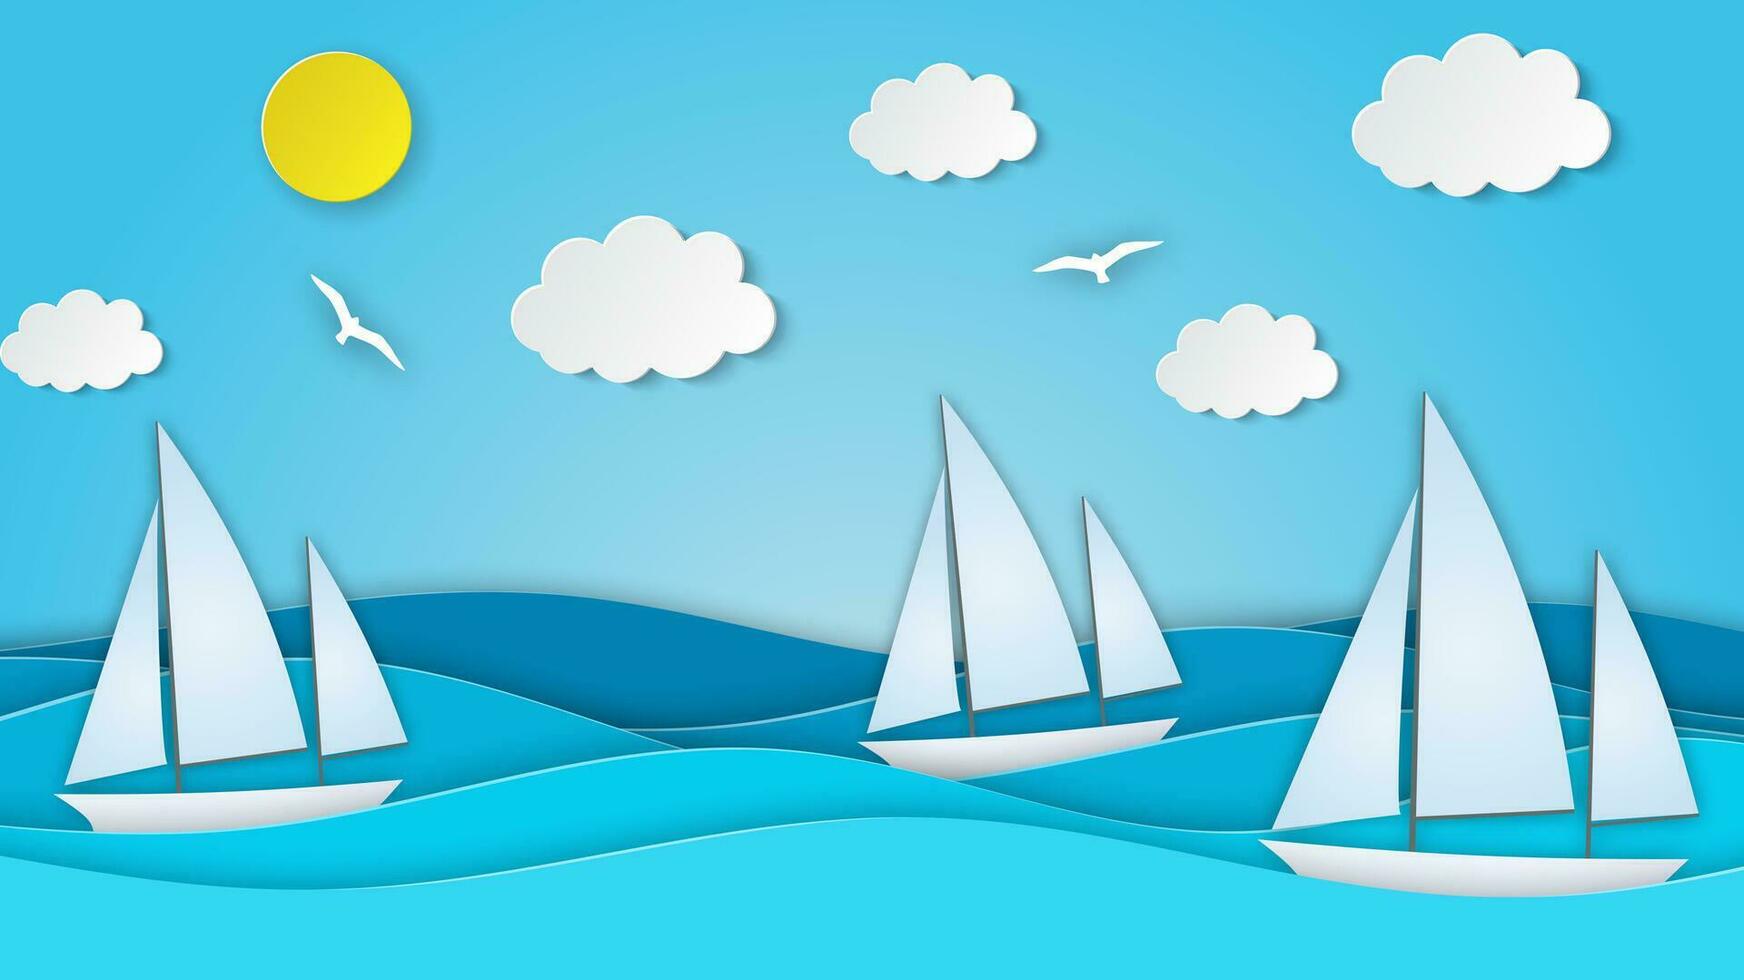 segelbåt i de hav. Sol, moln. papper skära illustration för reklam, resa, turism, kryssningar, resa byrå vektor illustration